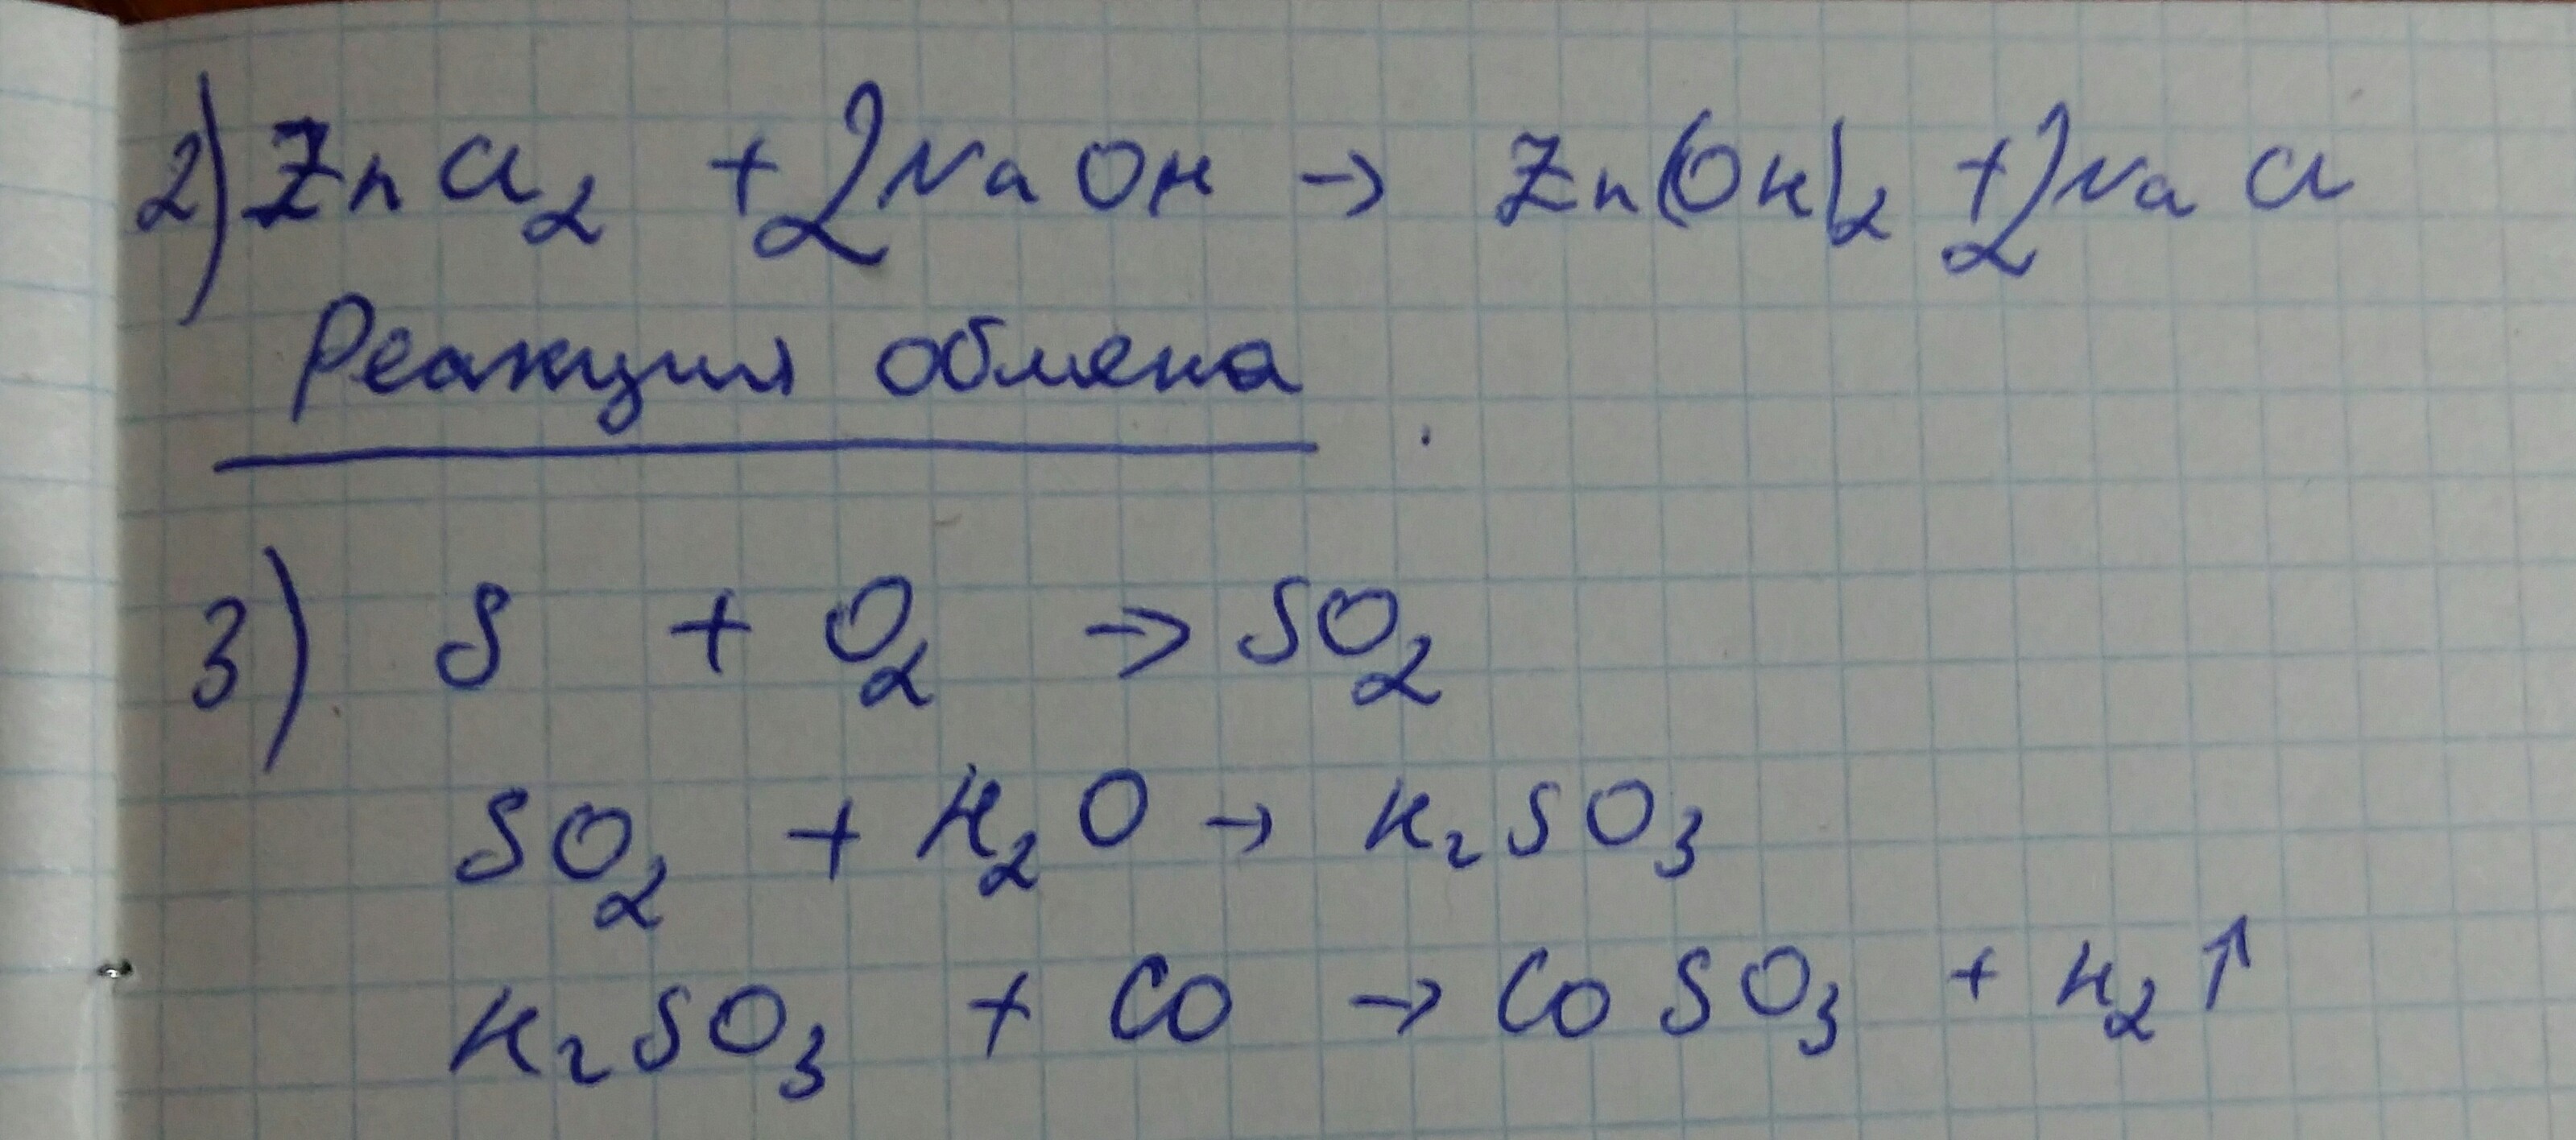 Схеме превращения s0 - s+4 соответствует химические уравнения. В схеме превращений cu Oh 2 a b x. Замещения.